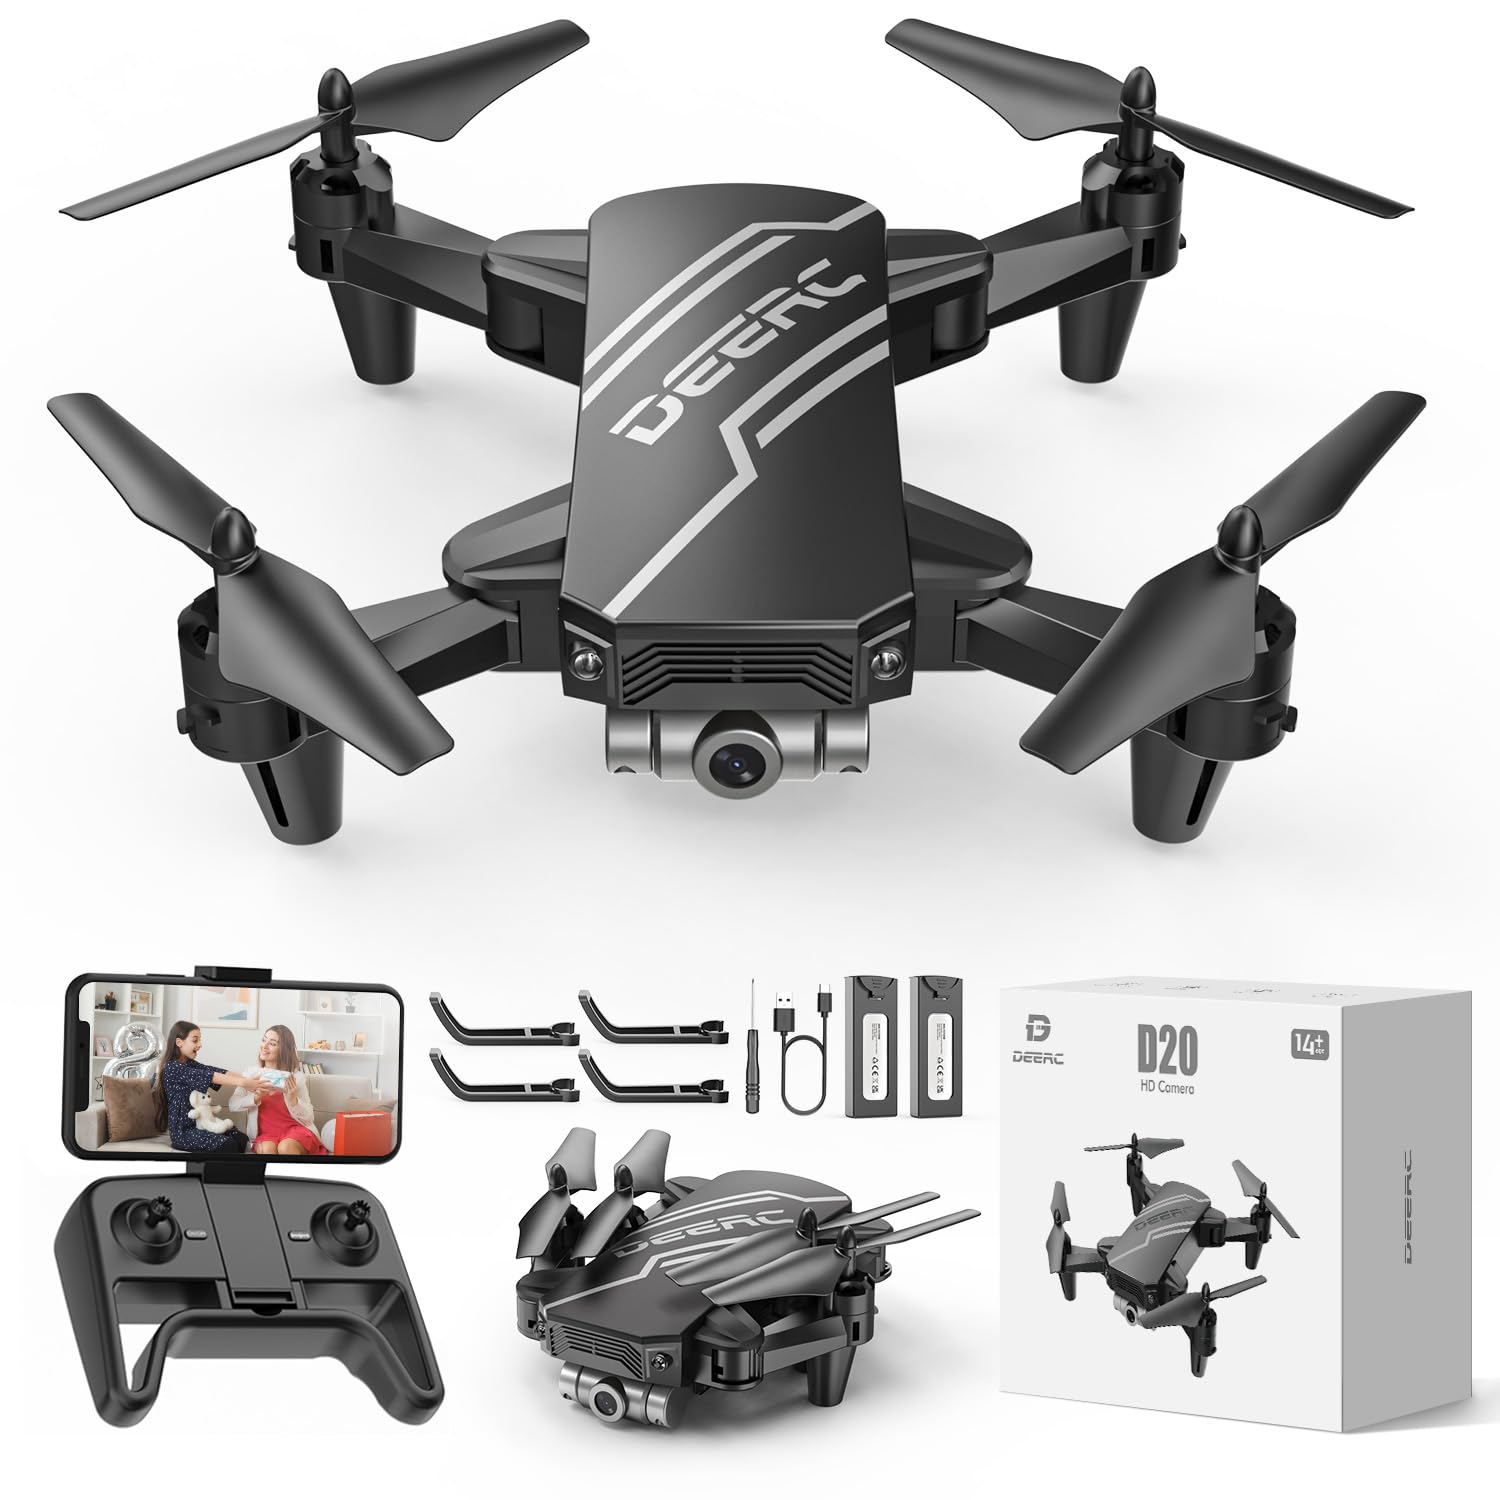 DEERC D20 Drohne für Kinder mit Kamera HD,Faltbar RC Quadcopter mit FPV Live Übertragung,lange Flugzeit,Gestensteuerung,Flugbahn,Höhenhaltung,One Key Start/Landen,Headless Modus,3D Flips für Anfänger von DEERC